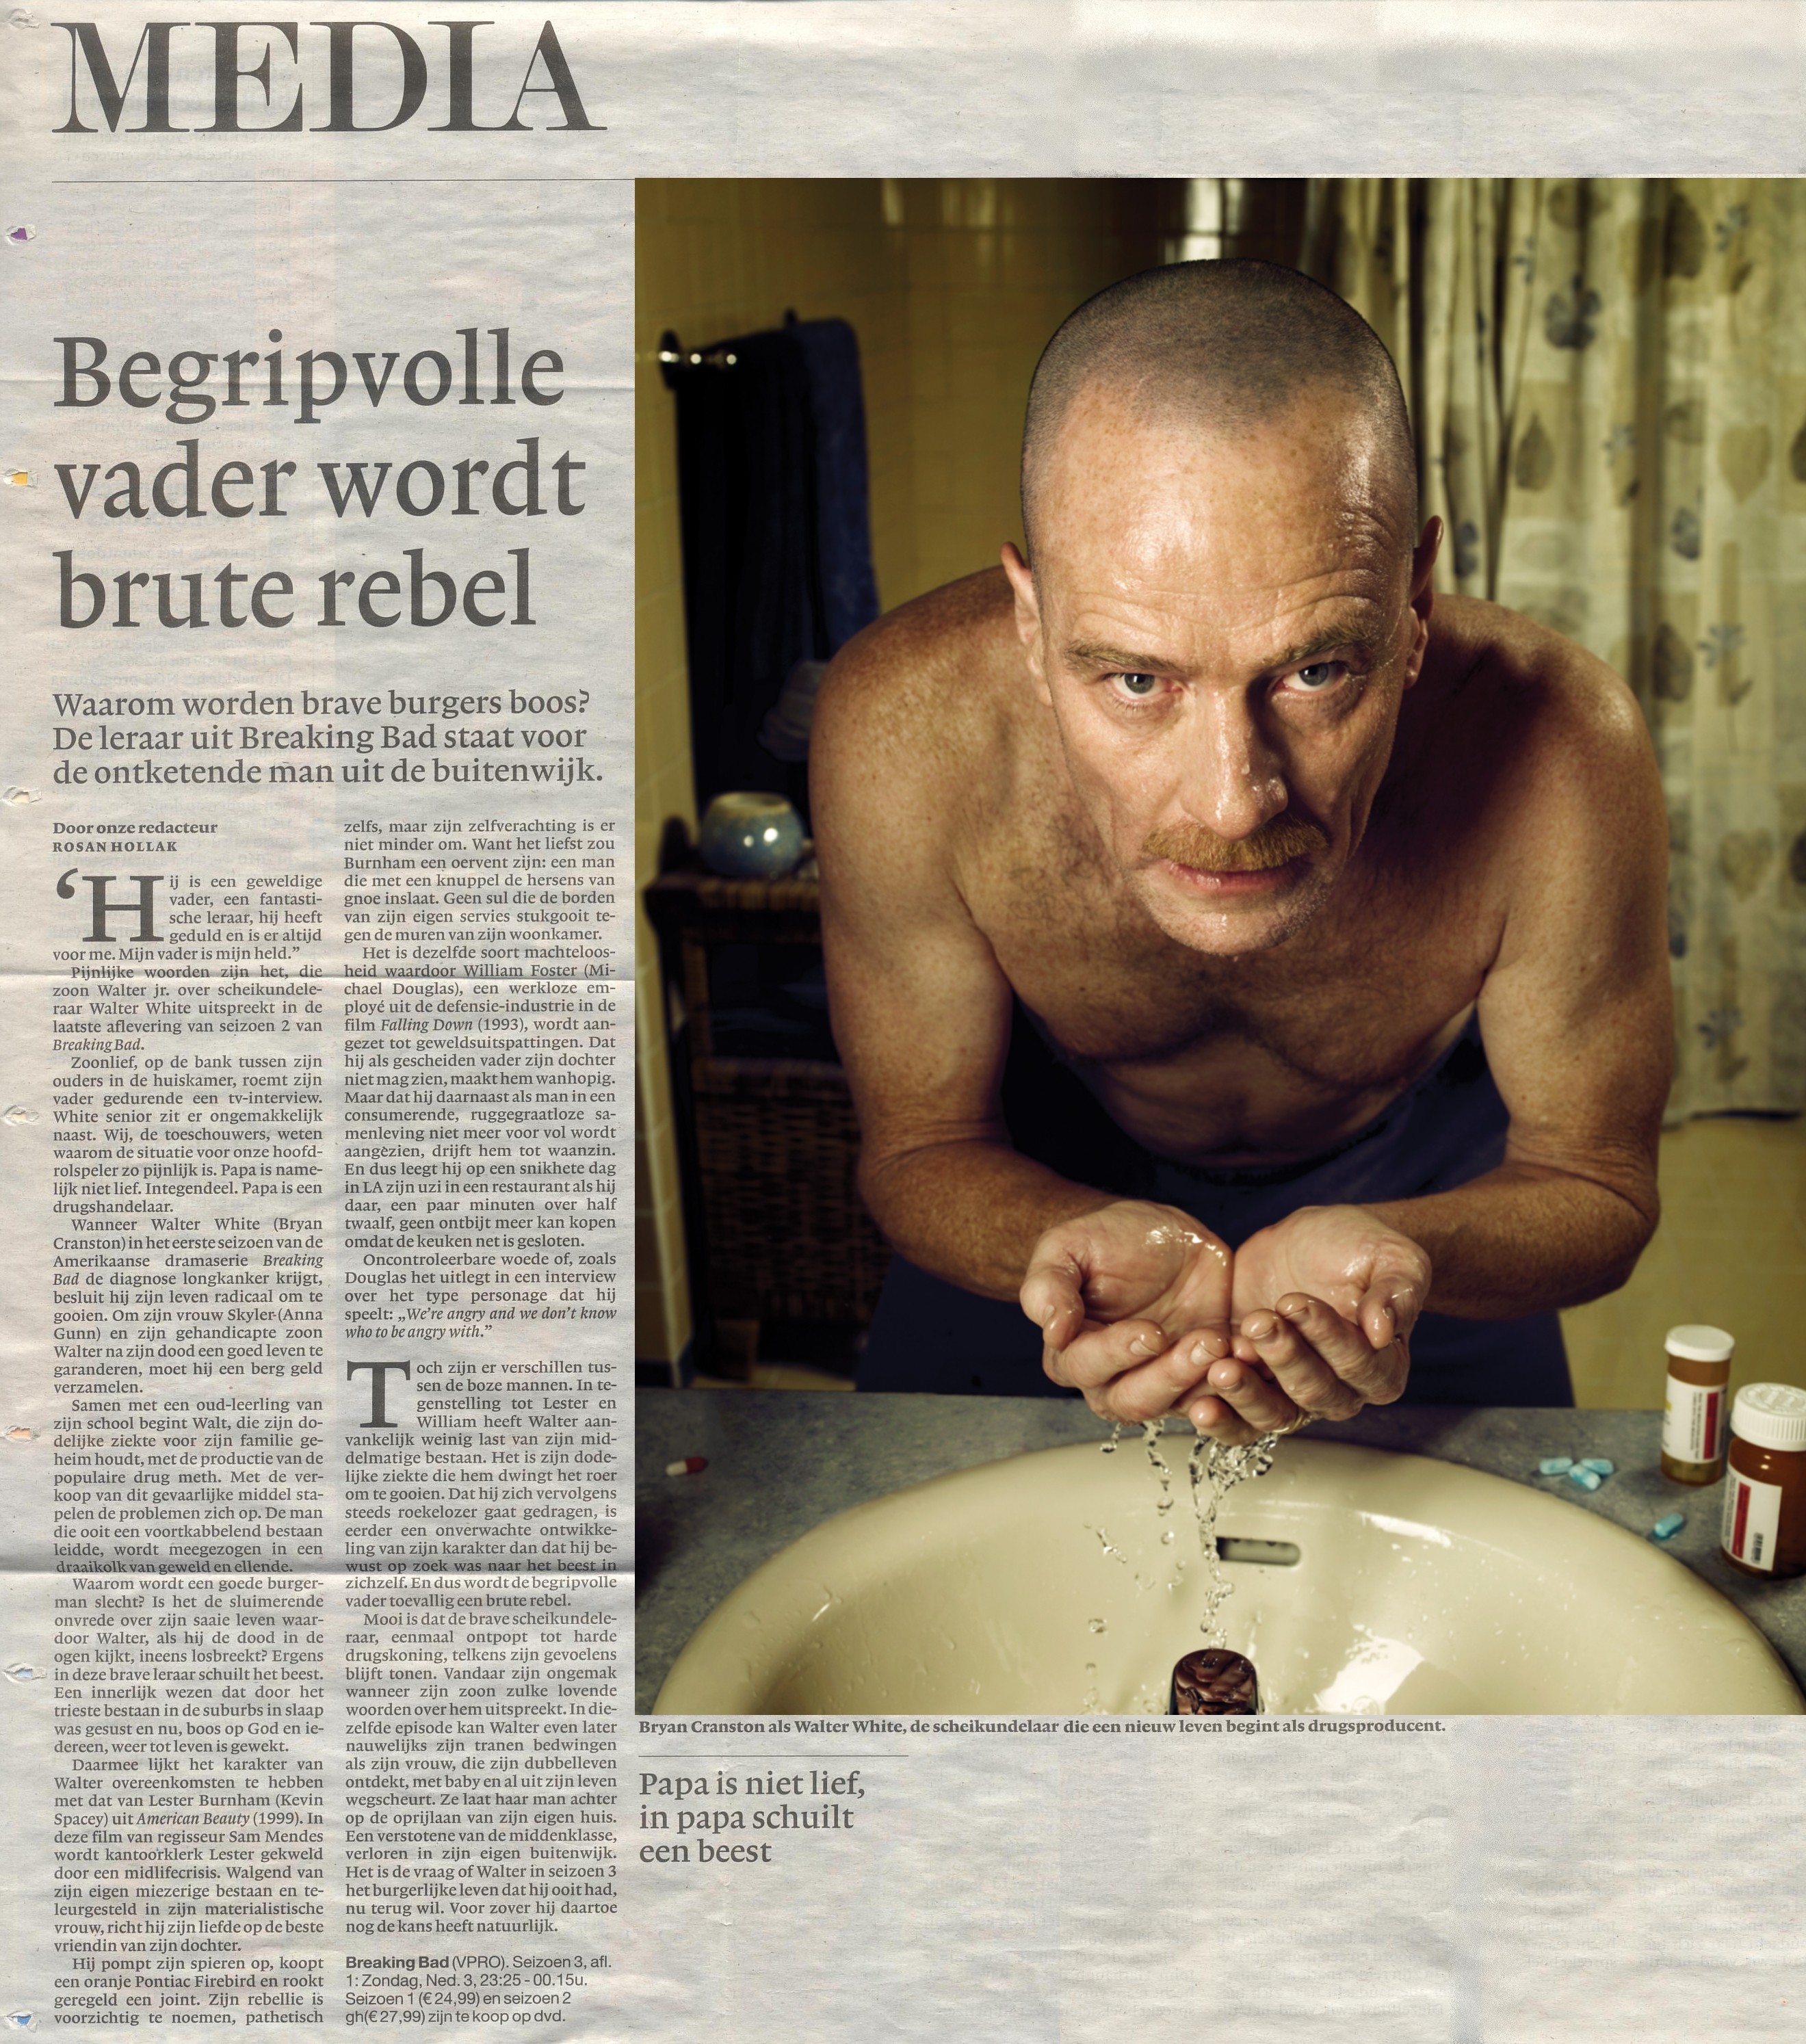 Breaking Bad review, Dutch NRC newspaper, February 2, 2013